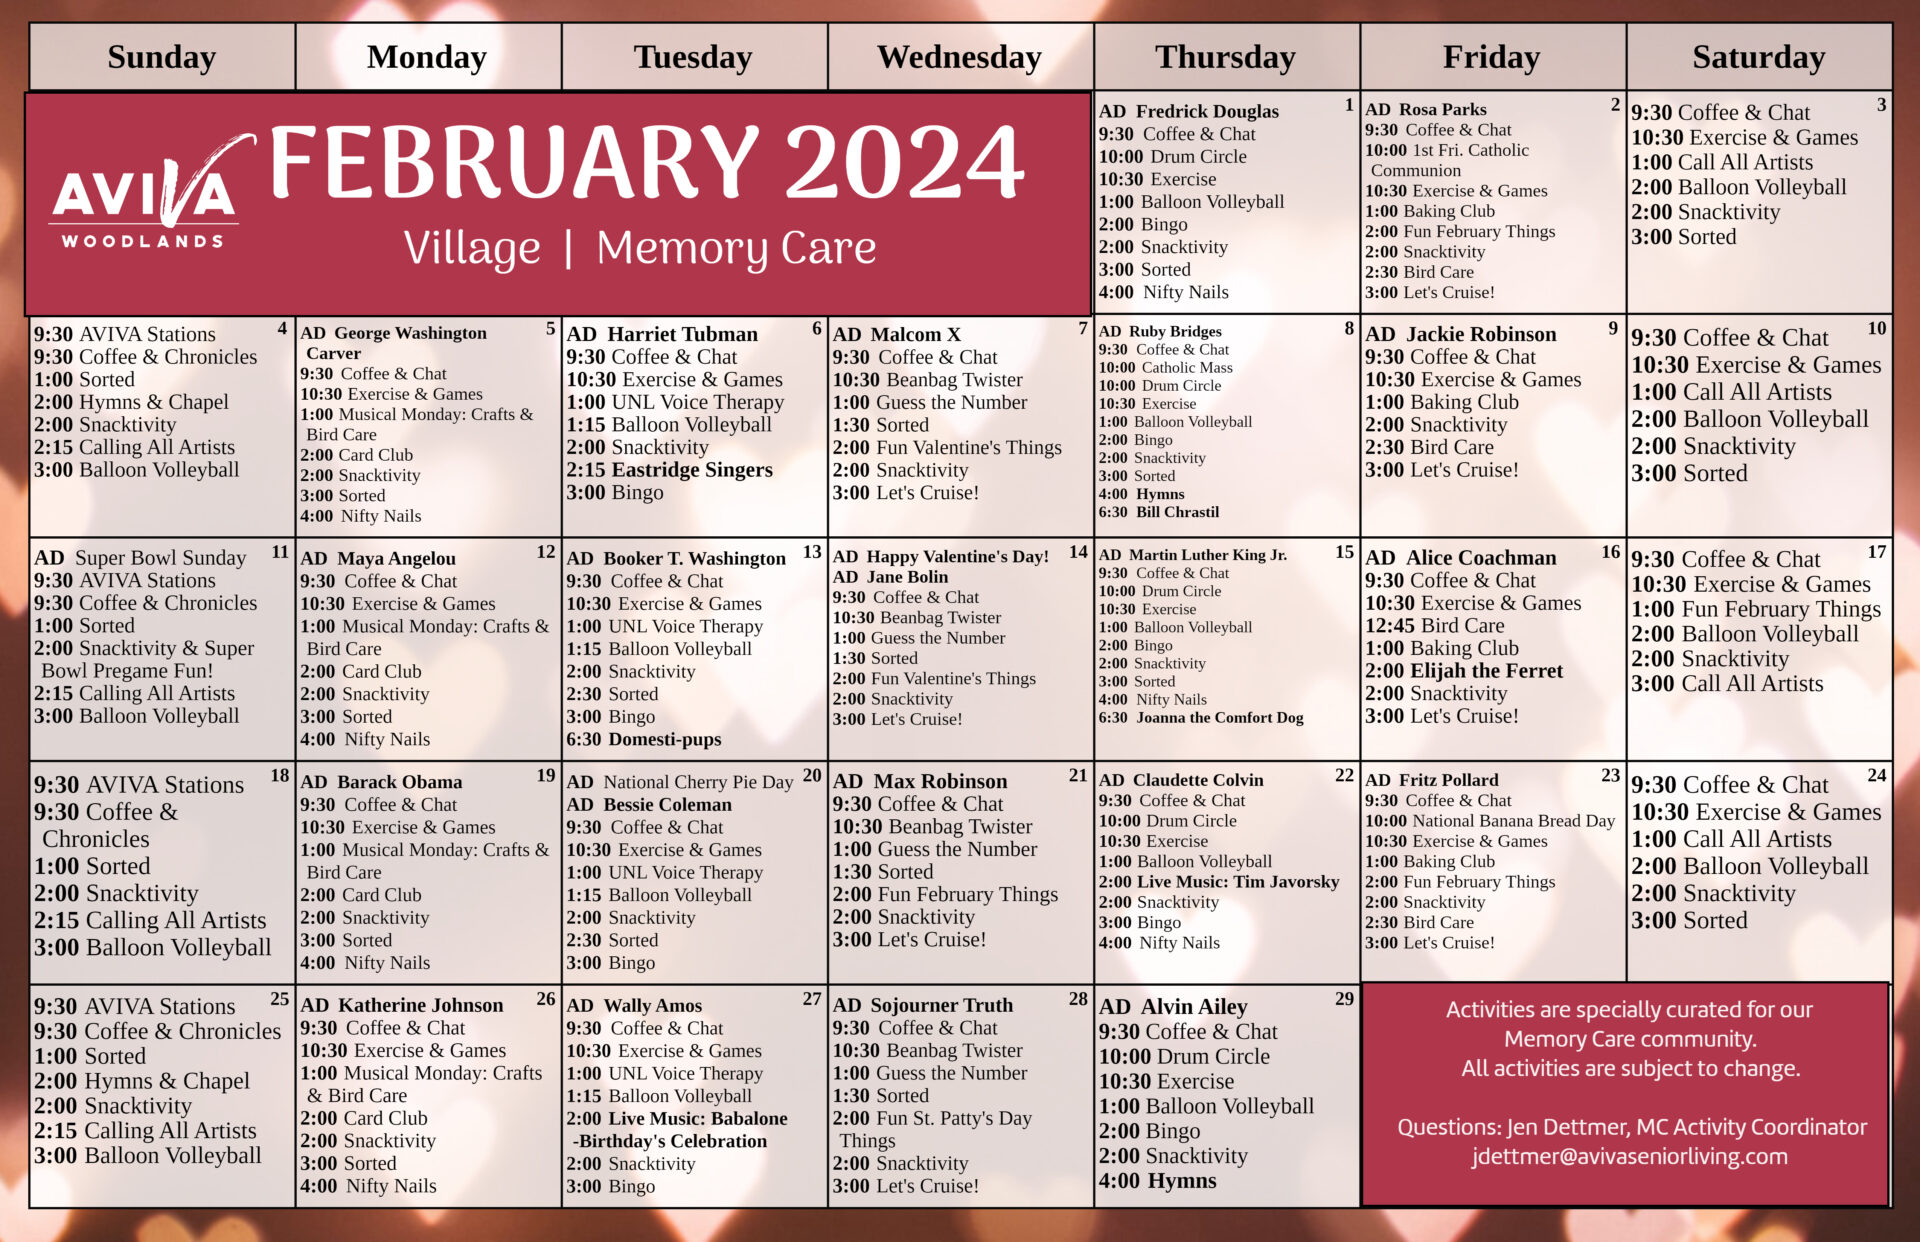 Aviva Woodlands Memory Care February 2024 Event Calendar